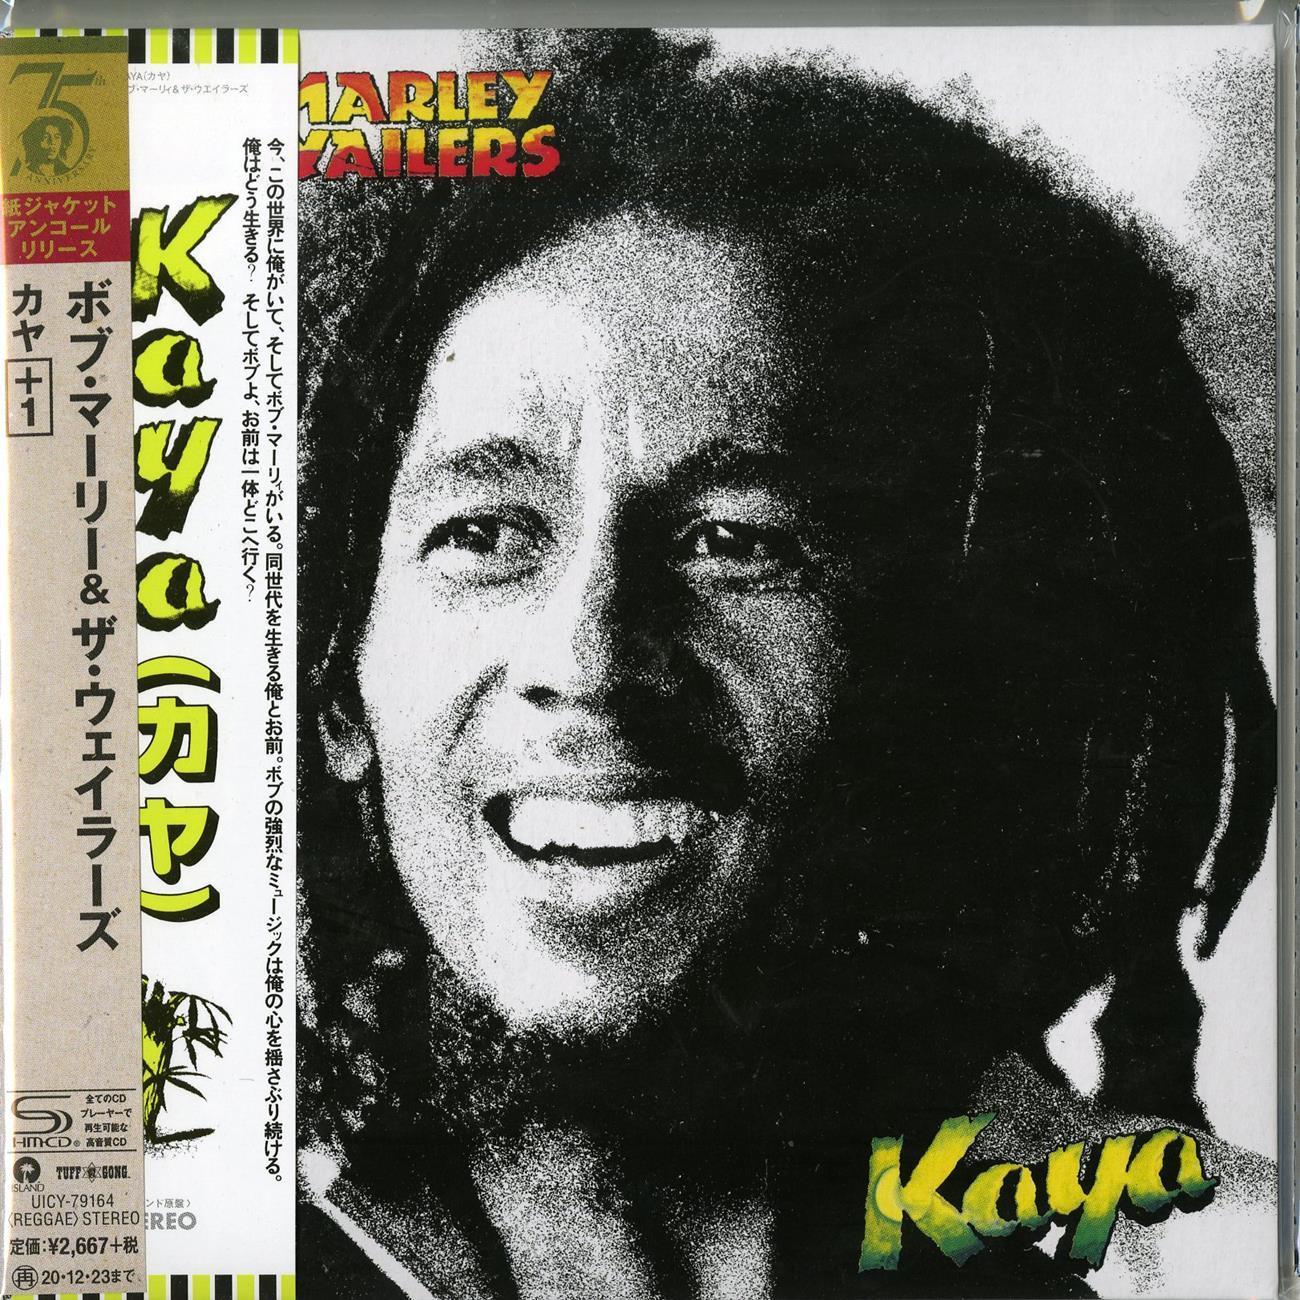 Bob Marley & The Wailers - Kaya - Japan  Mini LP SHM-CD Limited Edition